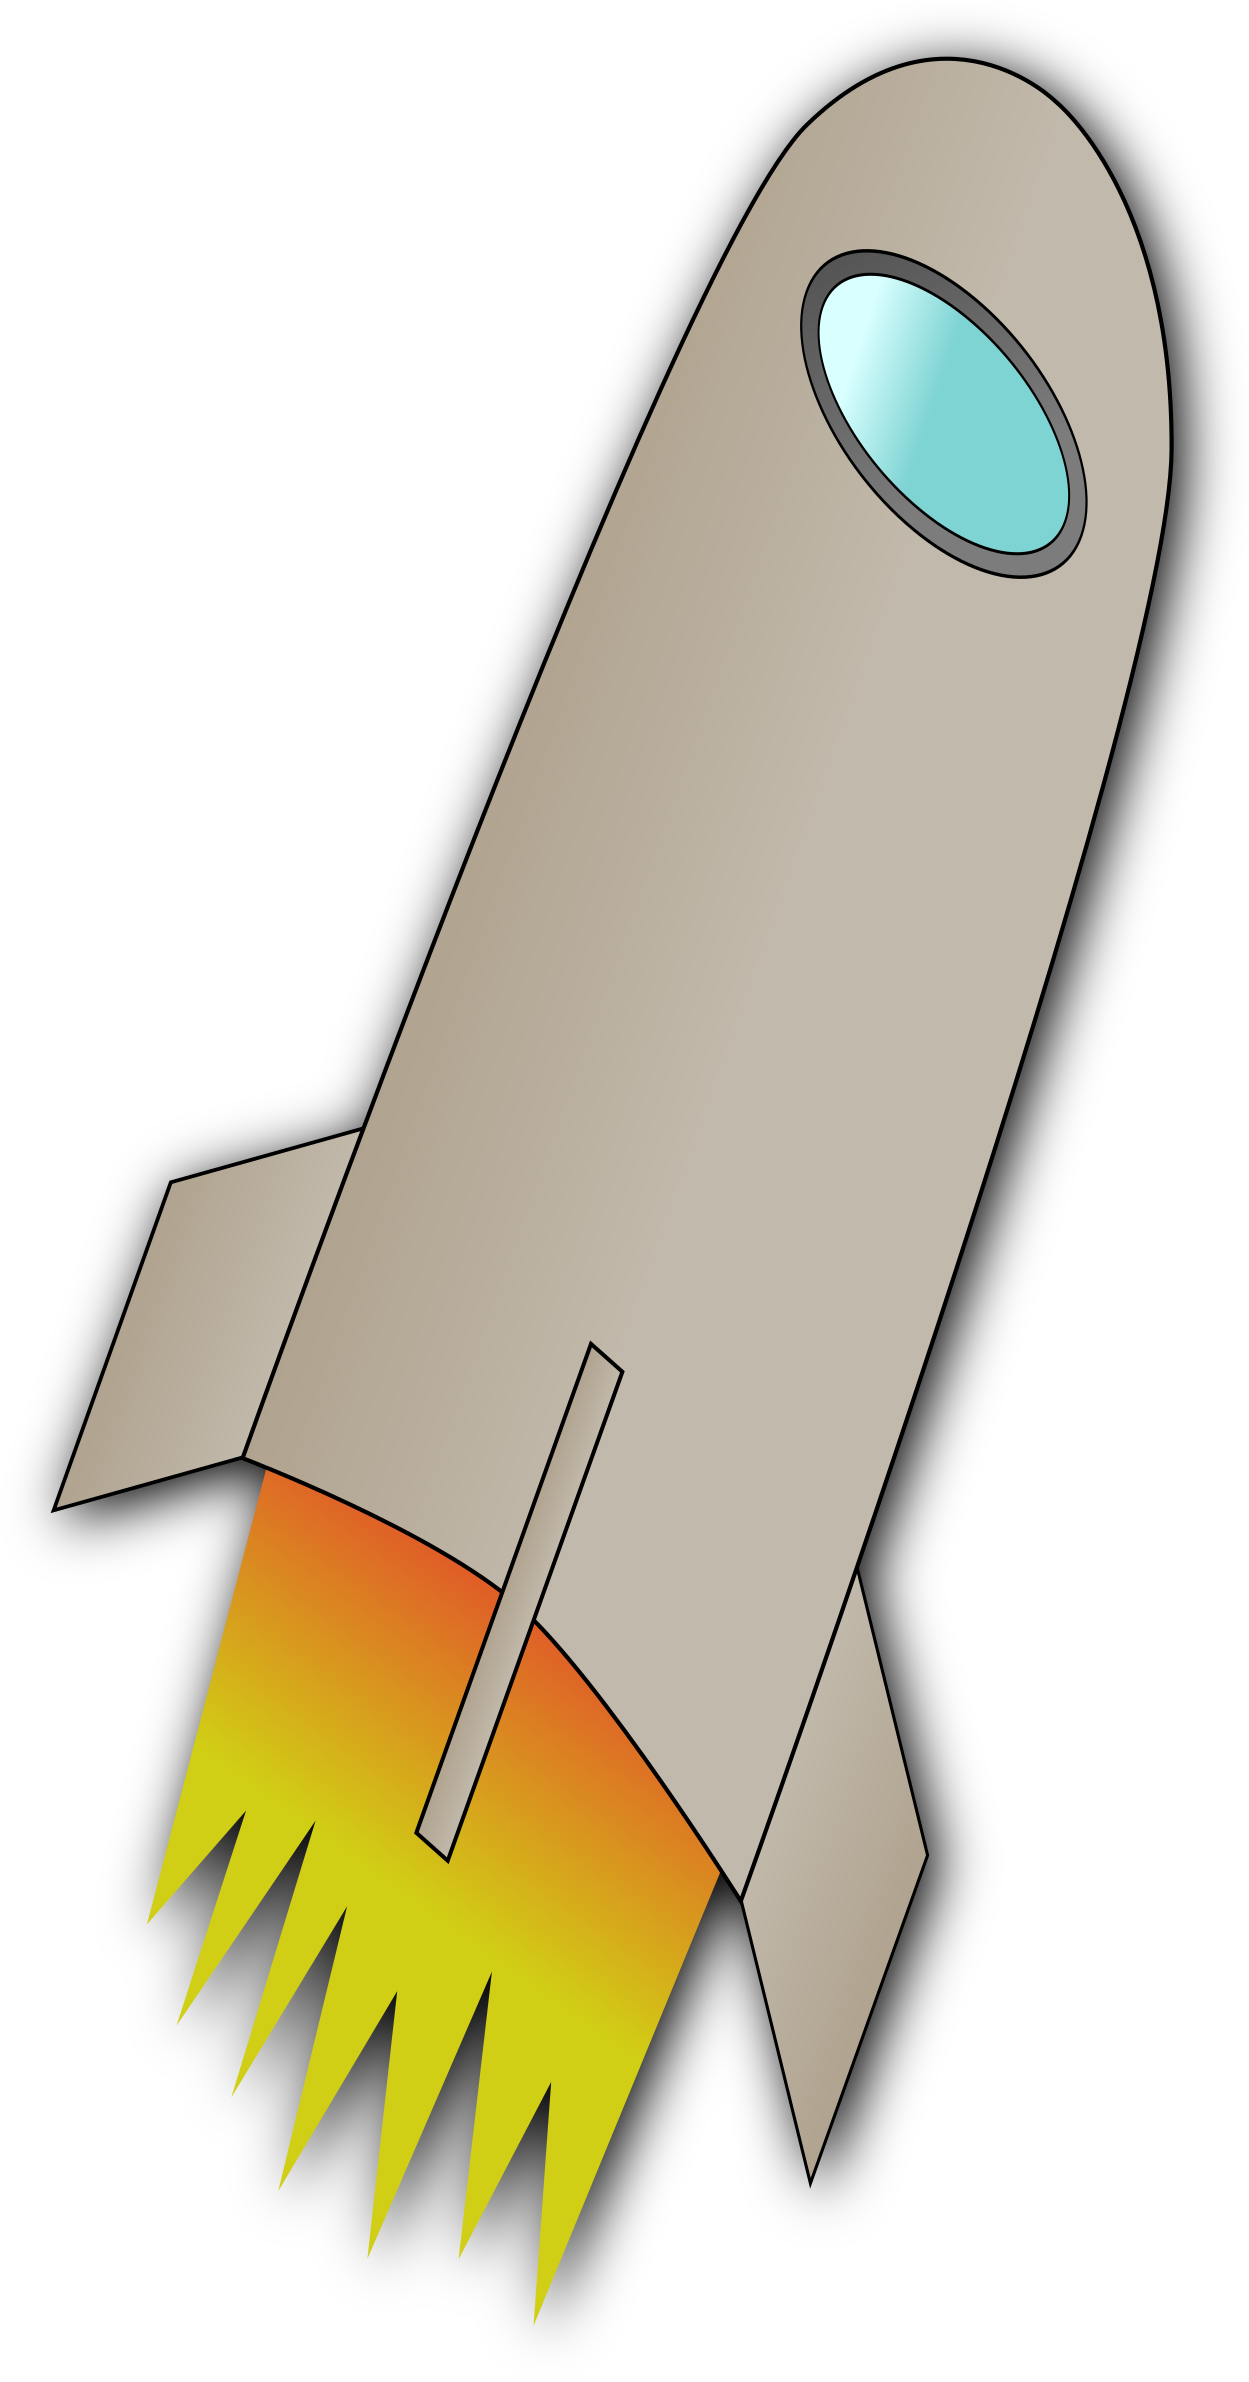 Space Rocket Whit Fire Clipart - ยาน อวกาศ แบ ล็ ค กราว น์ สี ดำ (1254x2400)